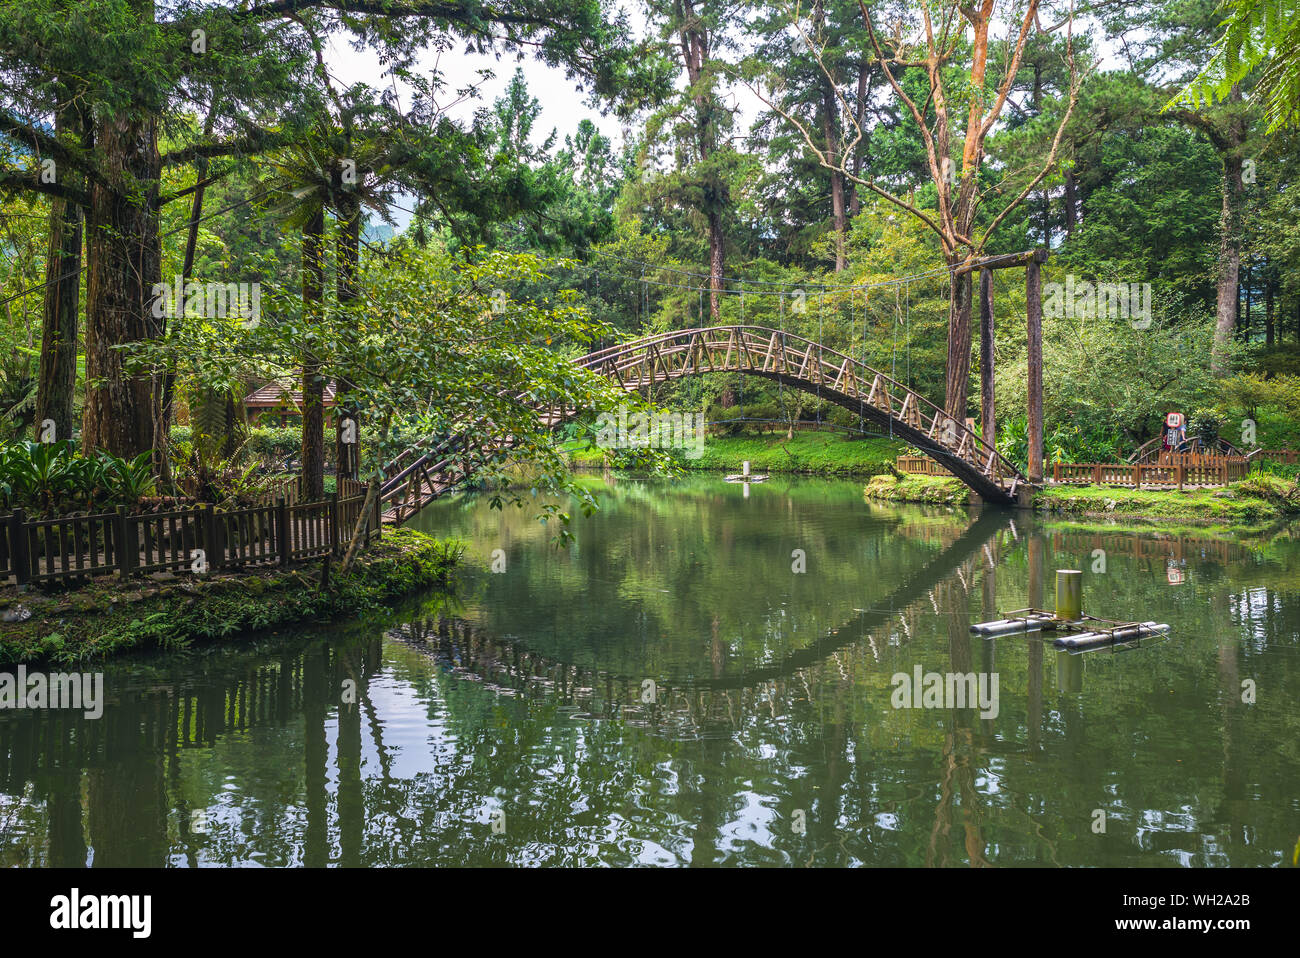 University Pond, Xitou Forest Recreational Area at nantou, taiwan Stock Photo